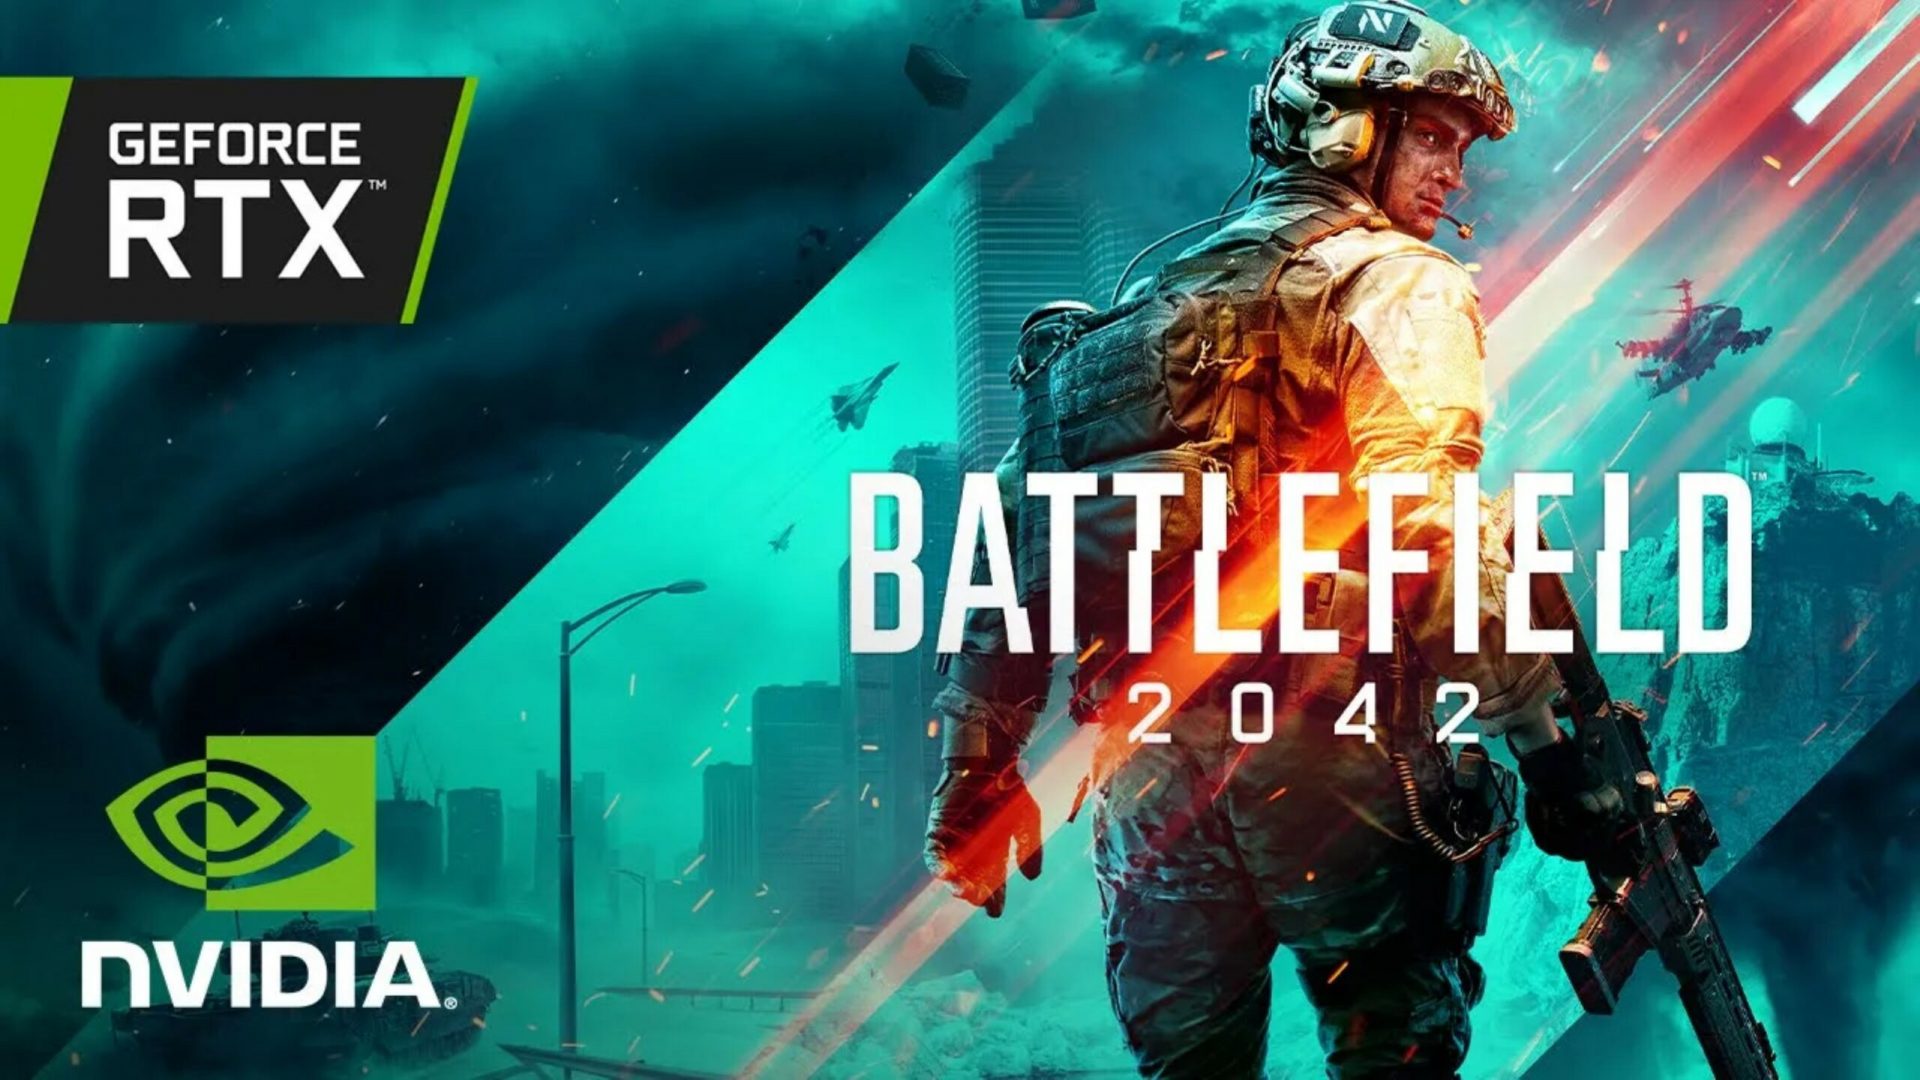 Nvidia-RTX-30-Battlefield-2042-1920x1080.jpeg